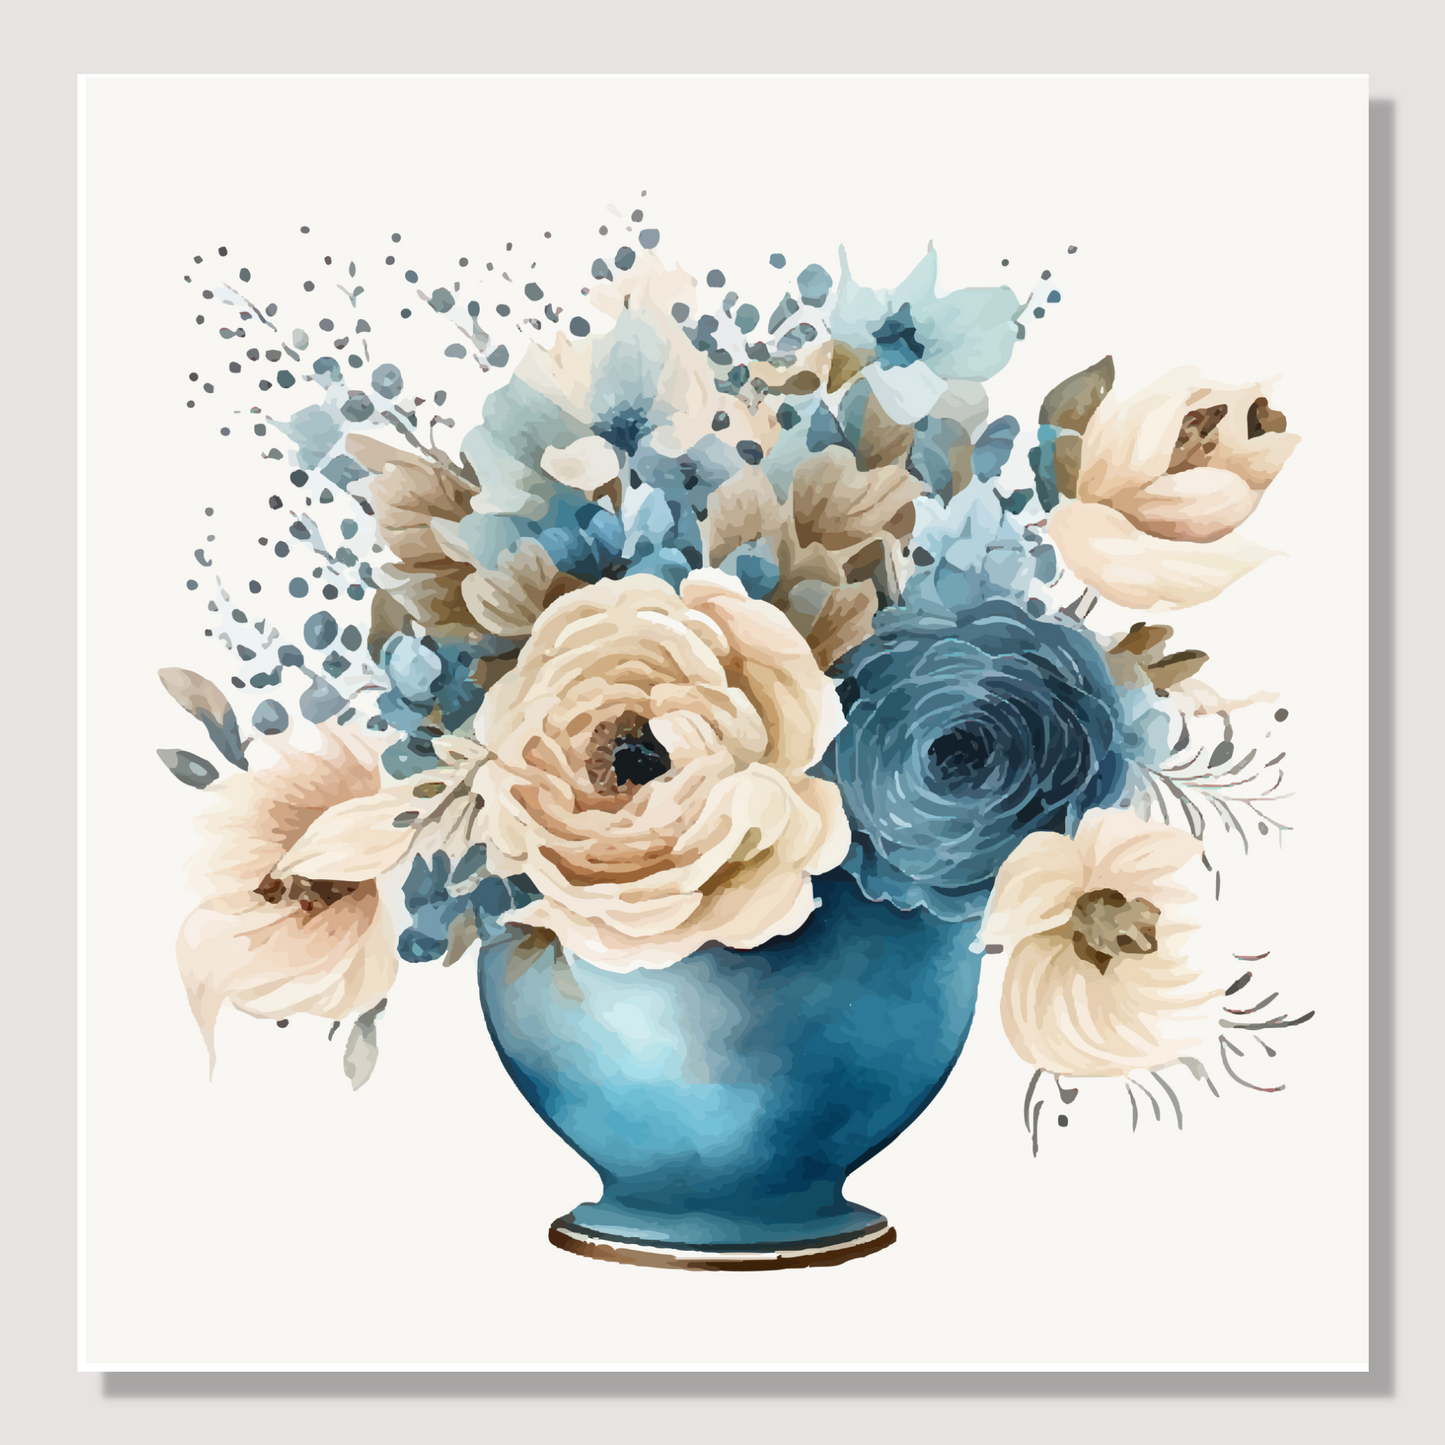 Blomstermotiv å¨lerret i vannfarger. Blå vase med rosebukett i beige og blått. 